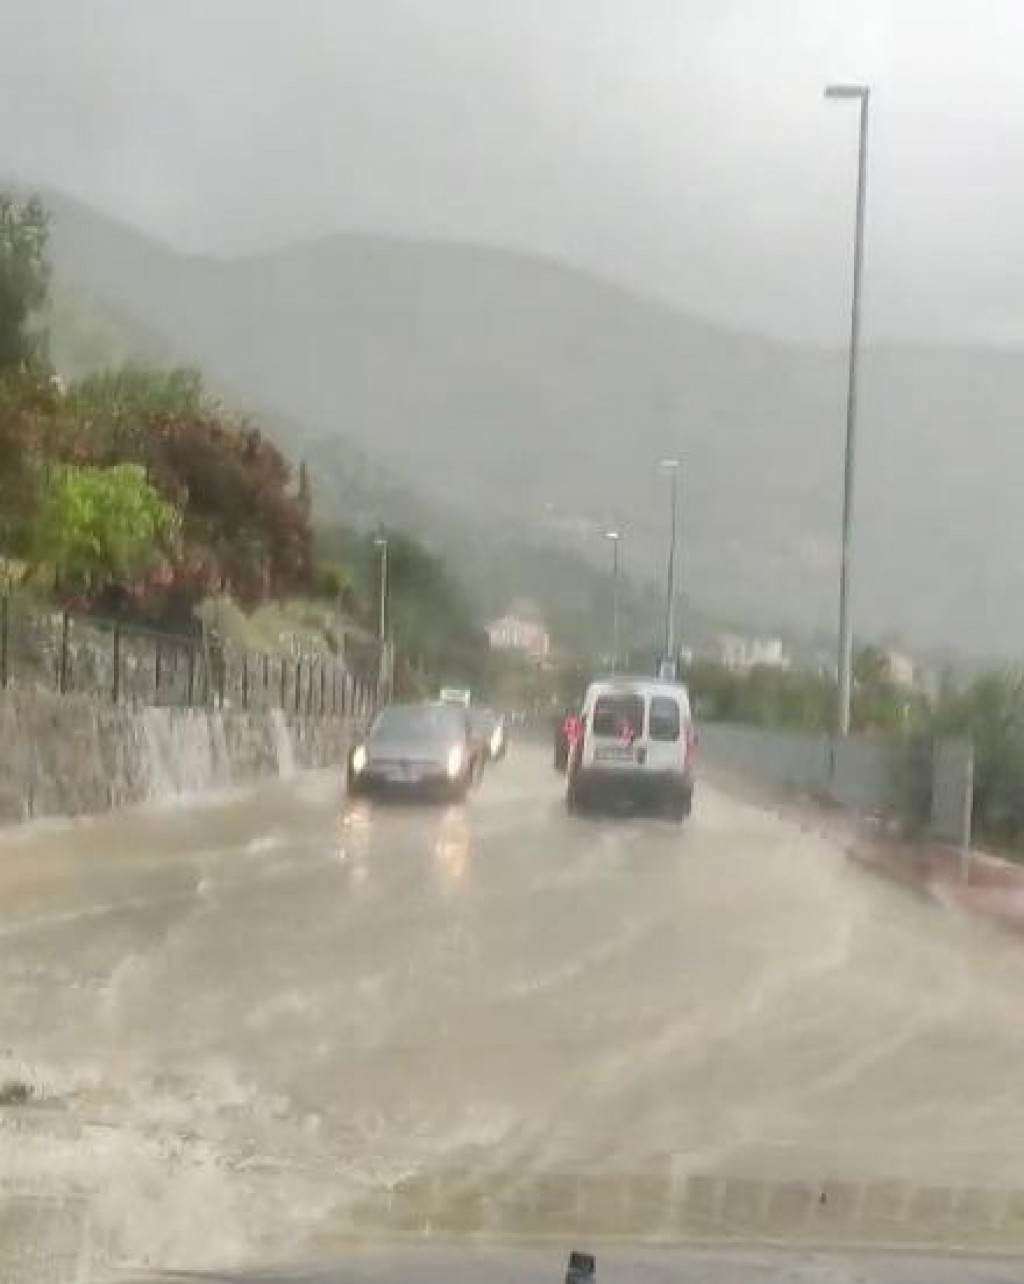 &lt;p&gt;Kiša se slijeva na kolnik u Solinama&lt;/p&gt;